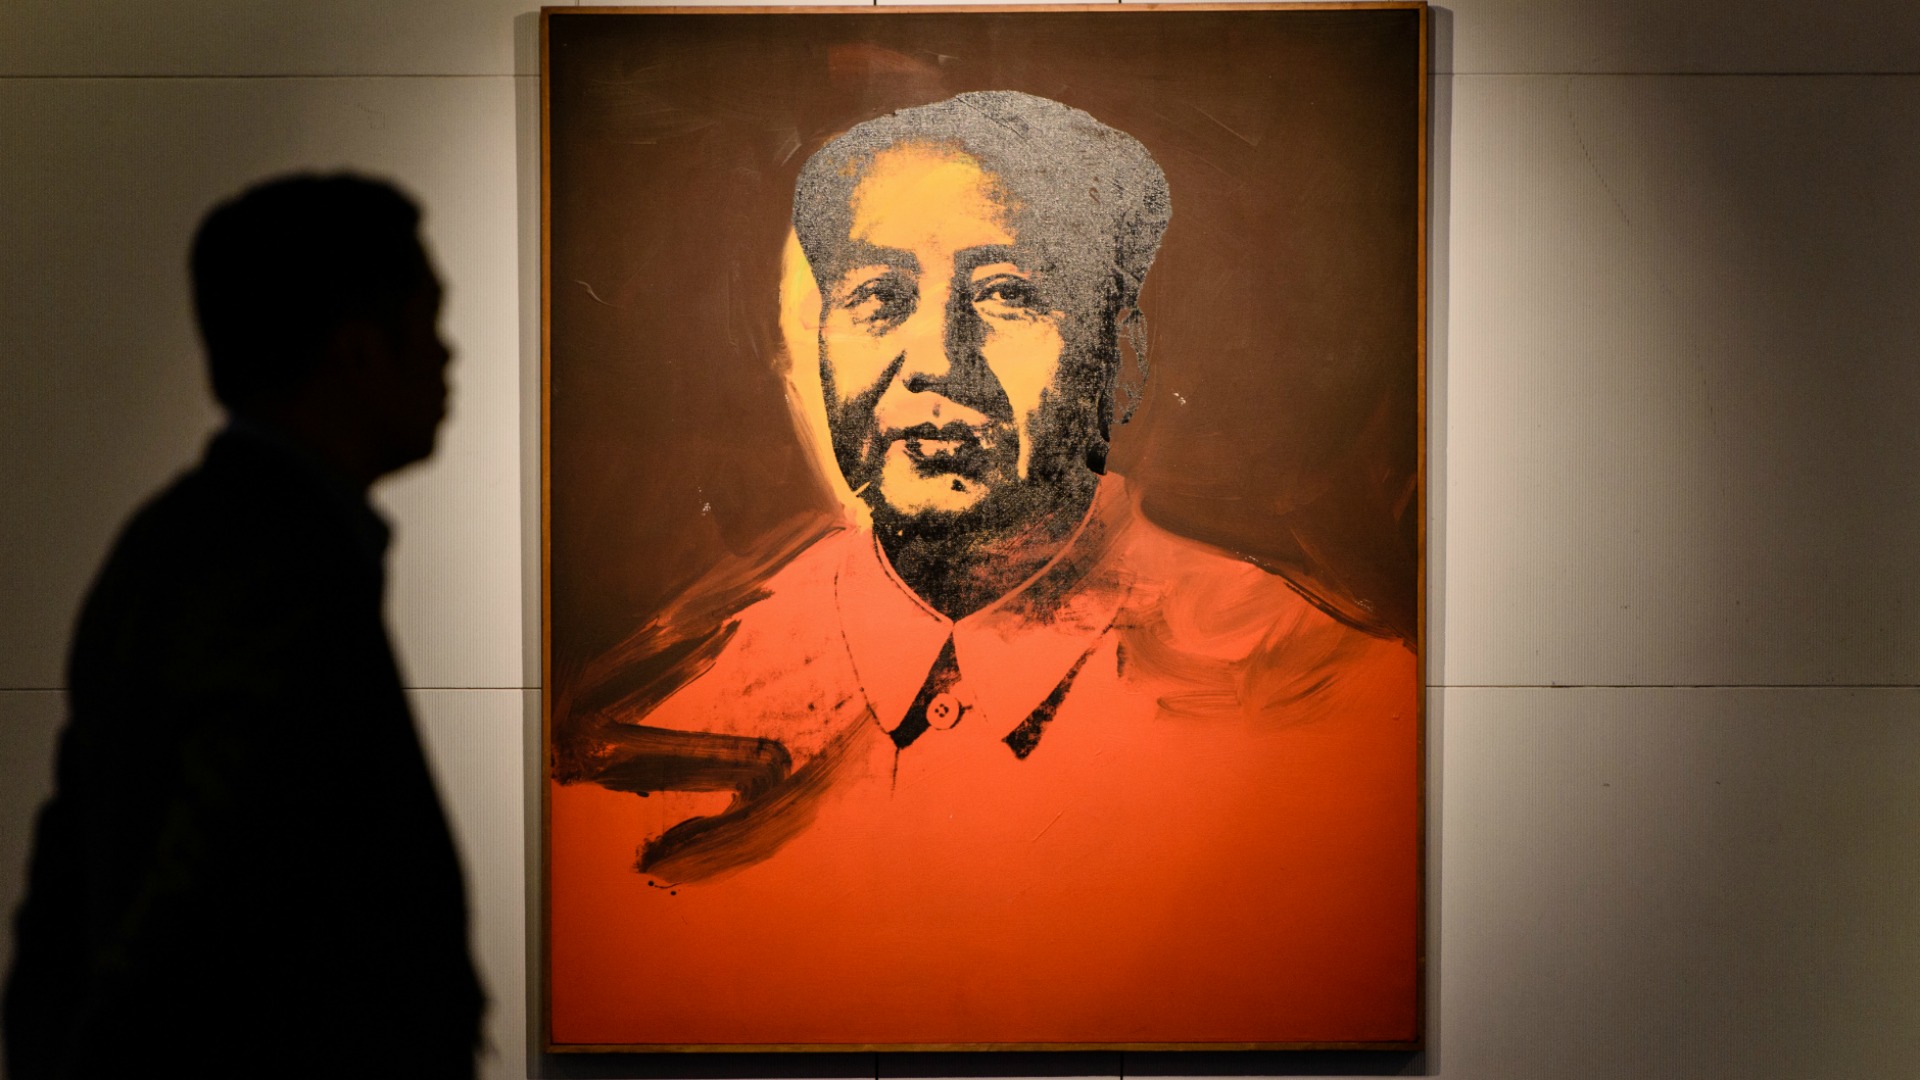 Subastado por 12,7 millones de dólares un retrato de Mao realizado por Warhol